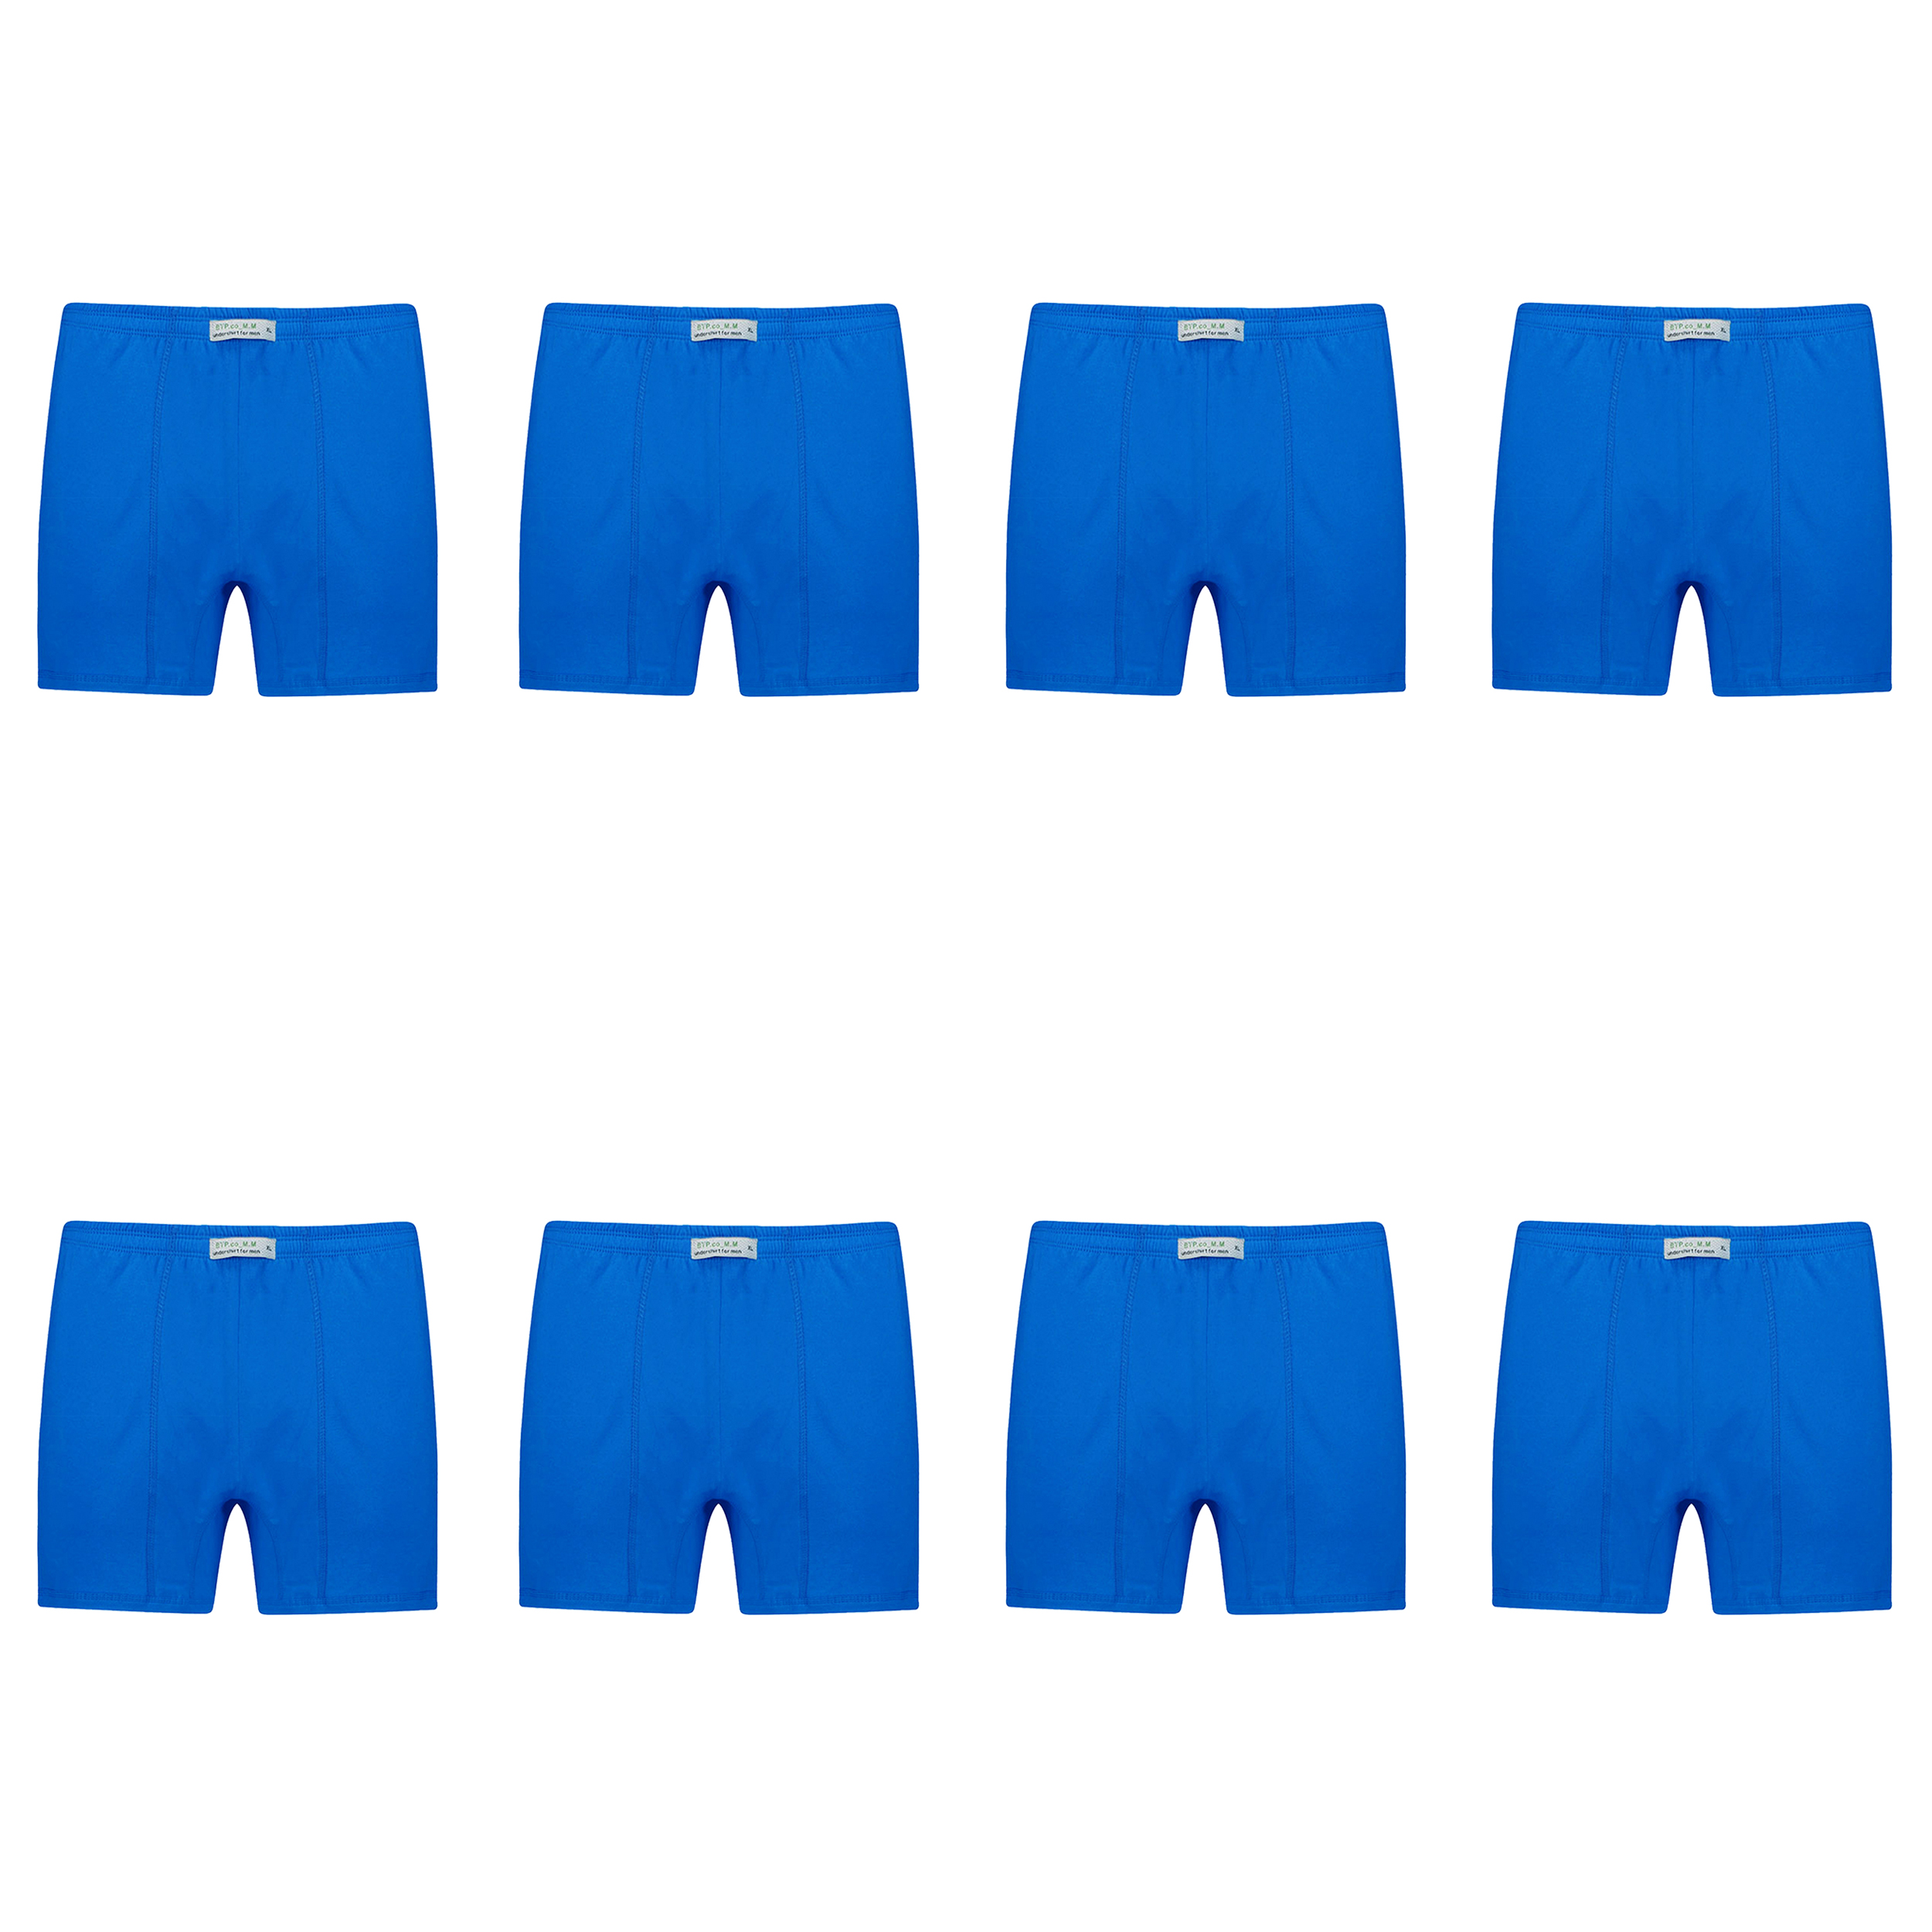 شورت پادار مردانه برهان تن پوش مدل 14-04 بسته 8 عددی رنگ آبی